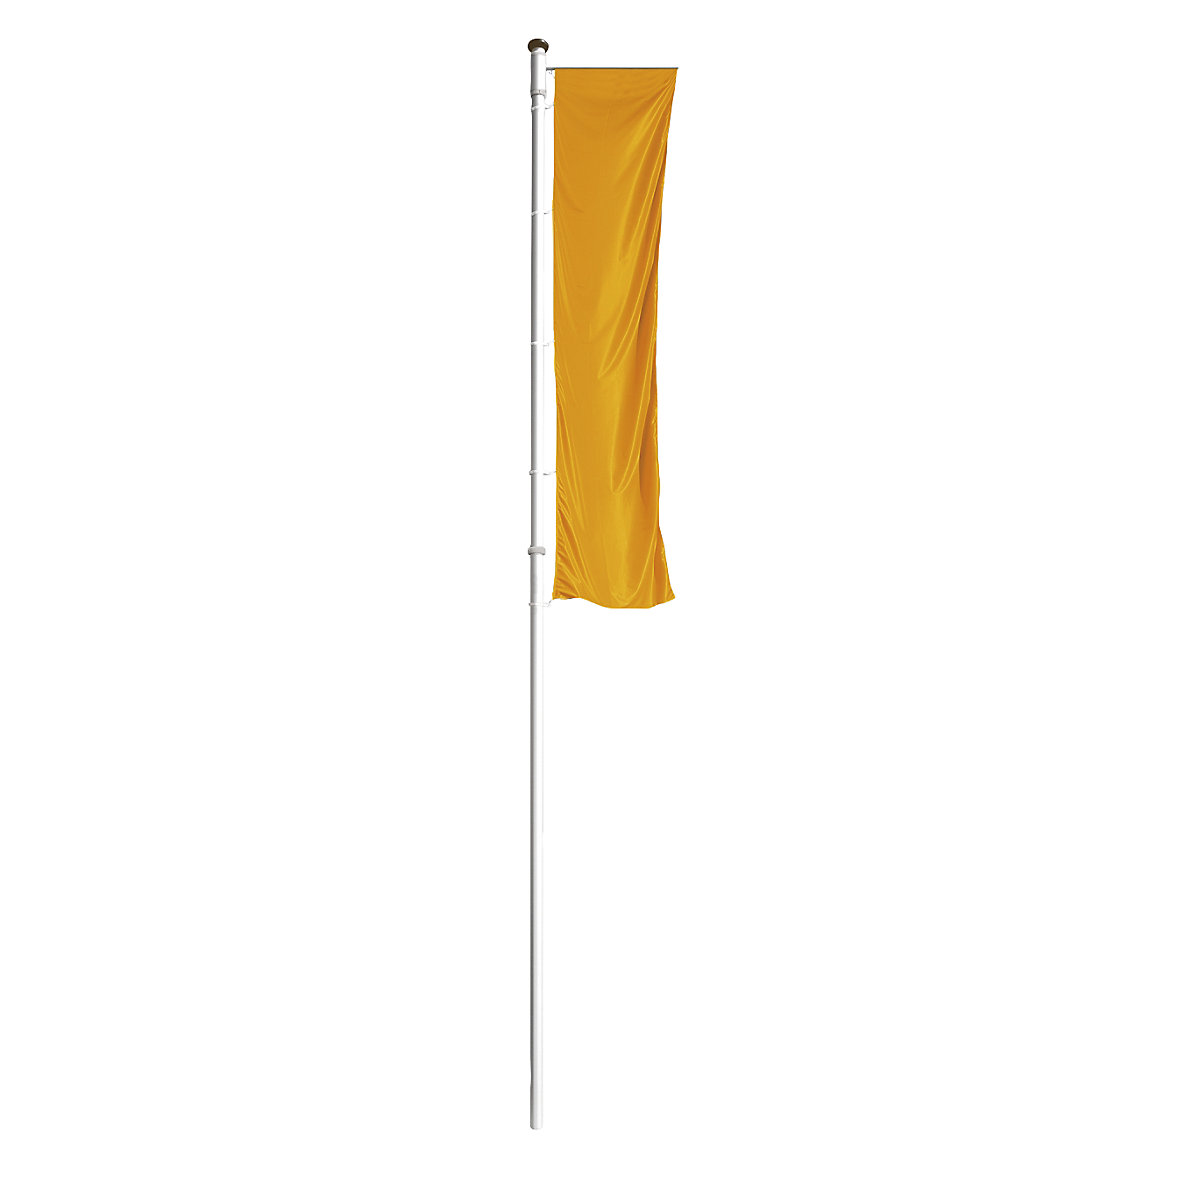 Mannus – Maszt flagowy z aluminium PRESTIGE, z wysięgnikiem, wys. nad podłożem 7 m, Ø 75 mm